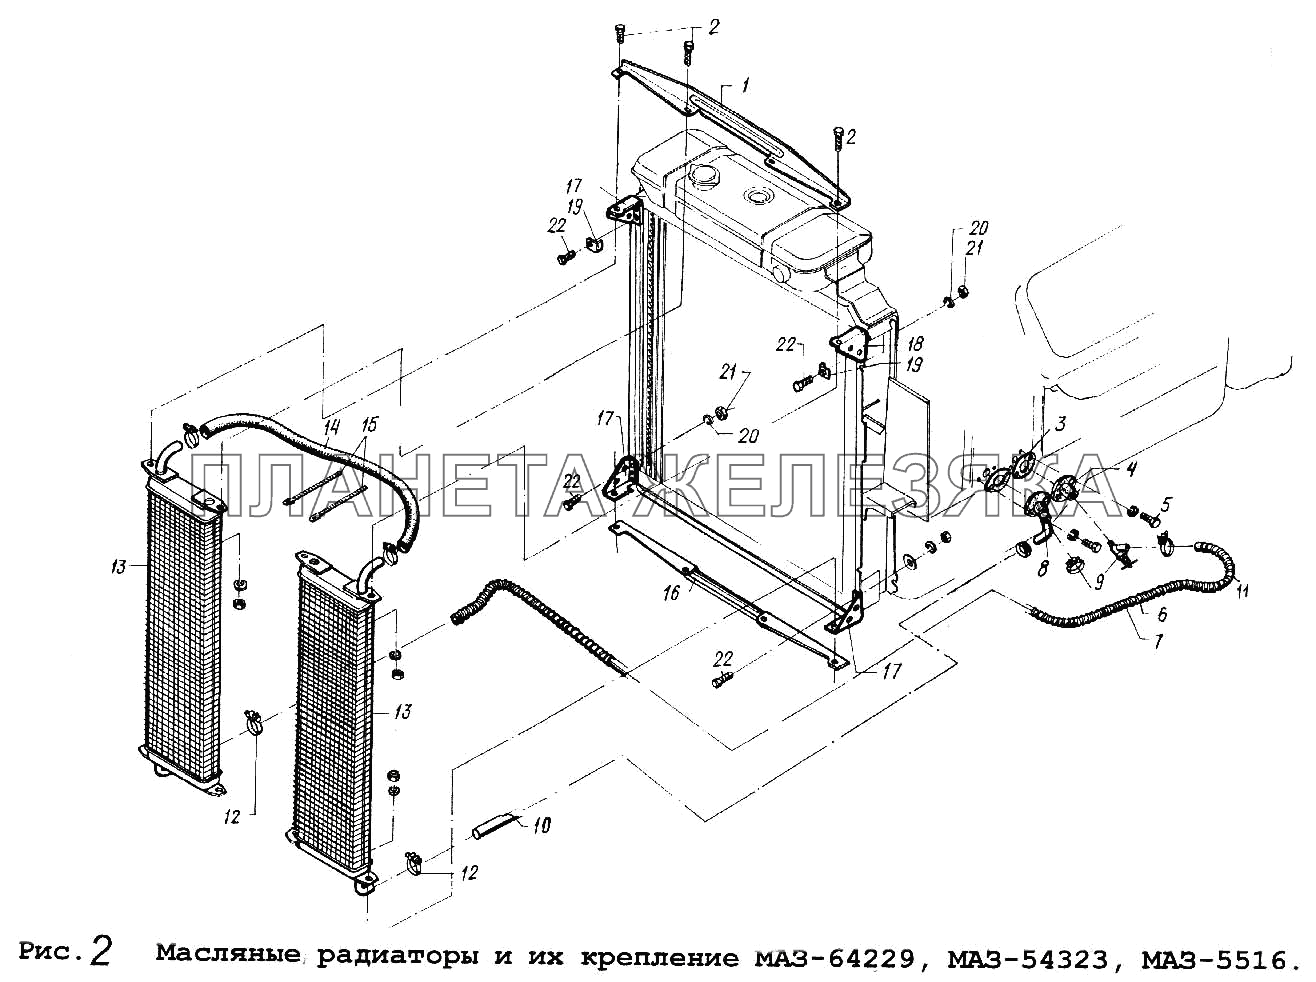 Масляные радиаторы и их крепление МАЗ-64229, МАЗ-54323,МАЗ-5516 МАЗ-5516